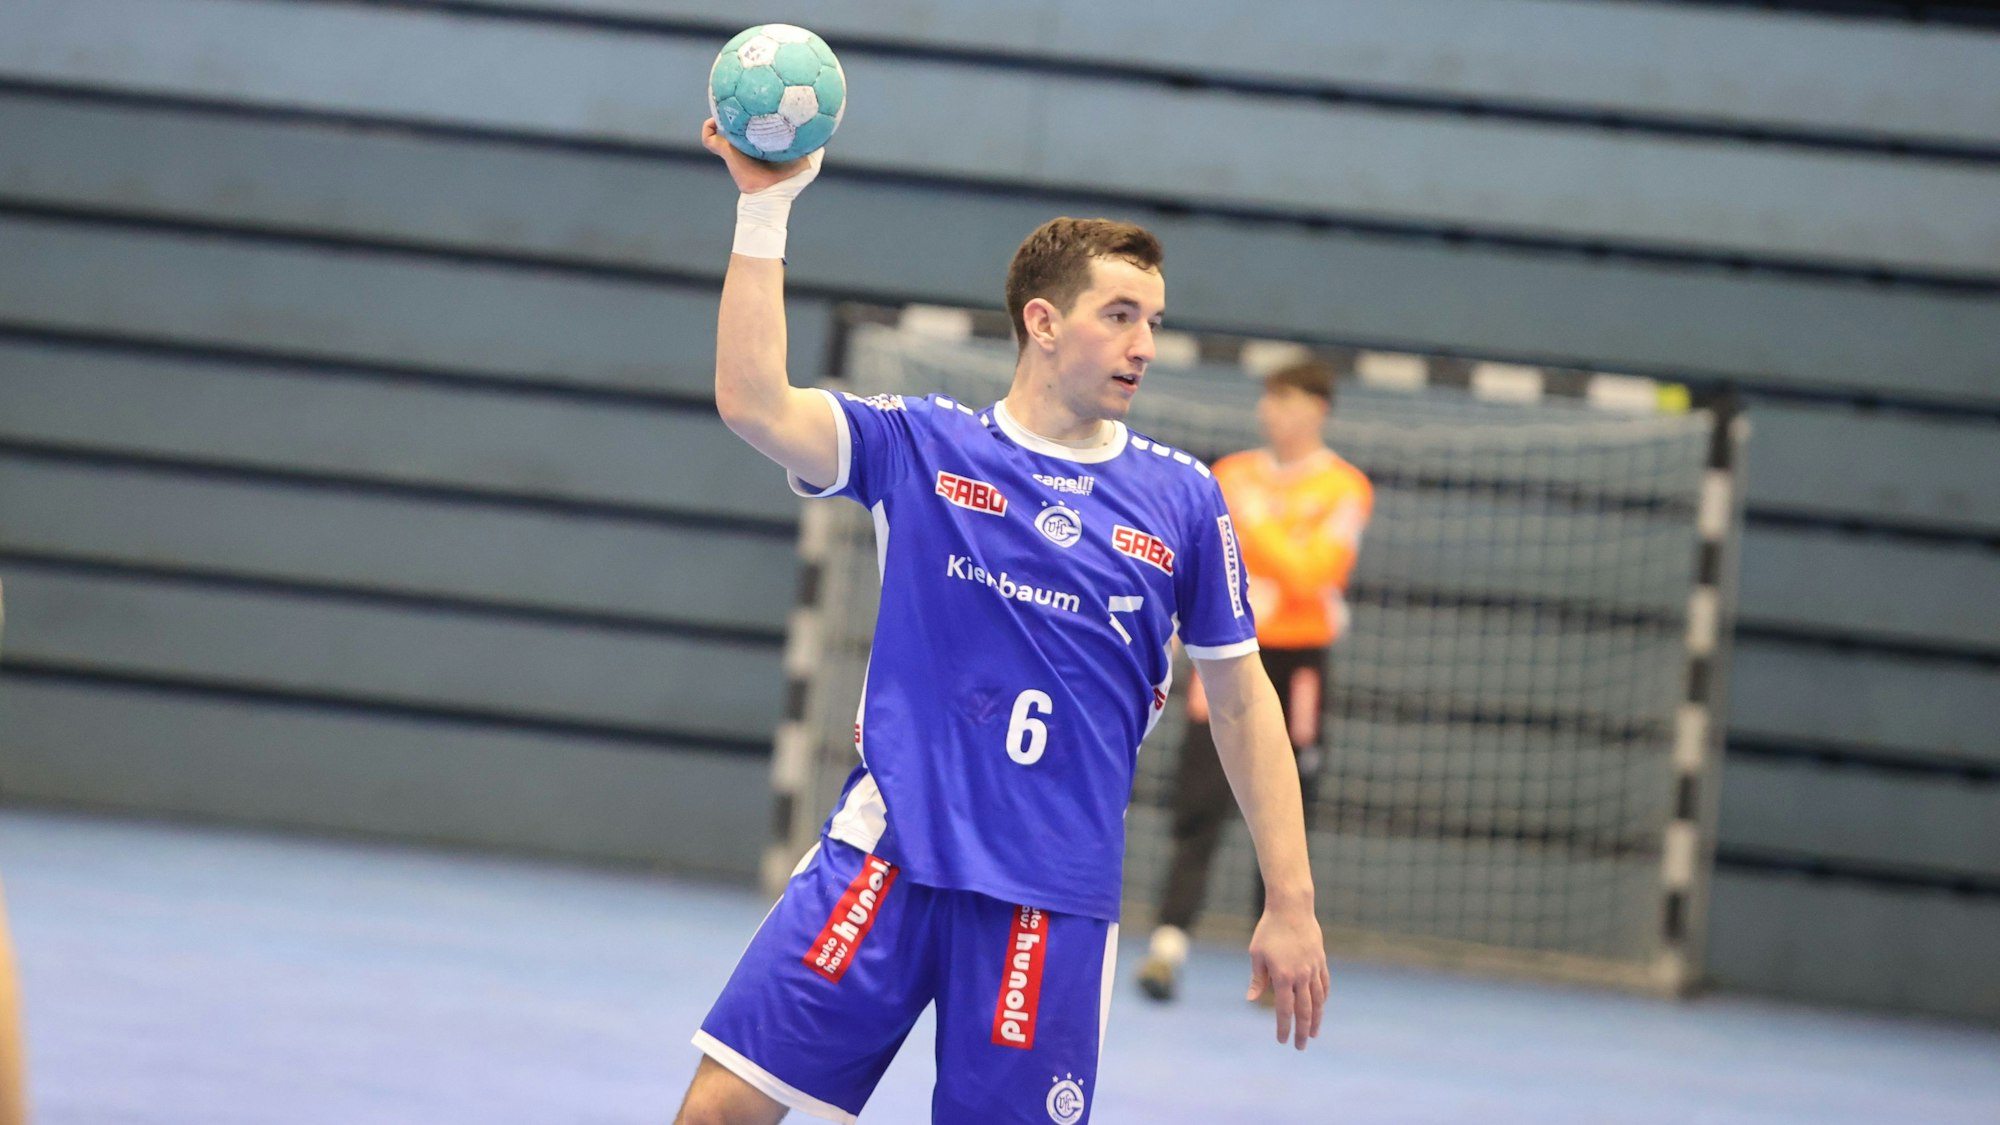 VfL-Handballer Giacomo Hrovatin steht mit dem Ball in der rechten Hand und schaut, wohin er ihn werfen kann.